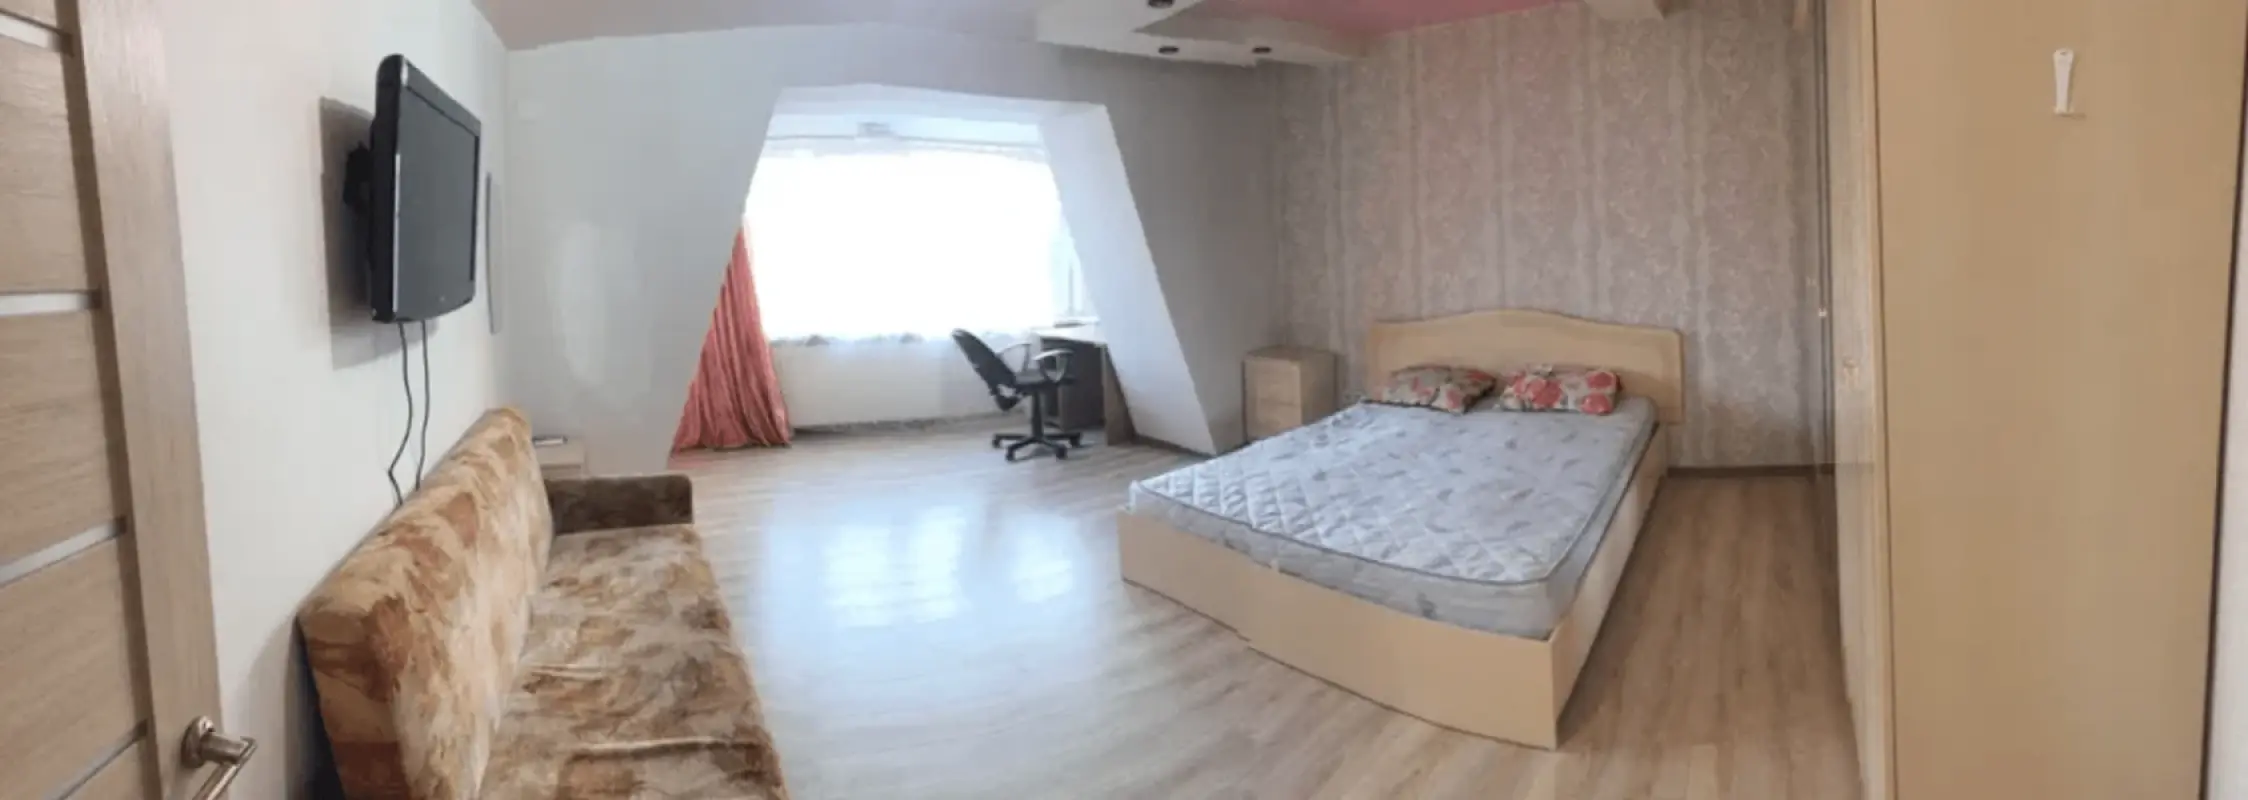 Apartment for rent - Tobolska Street 49